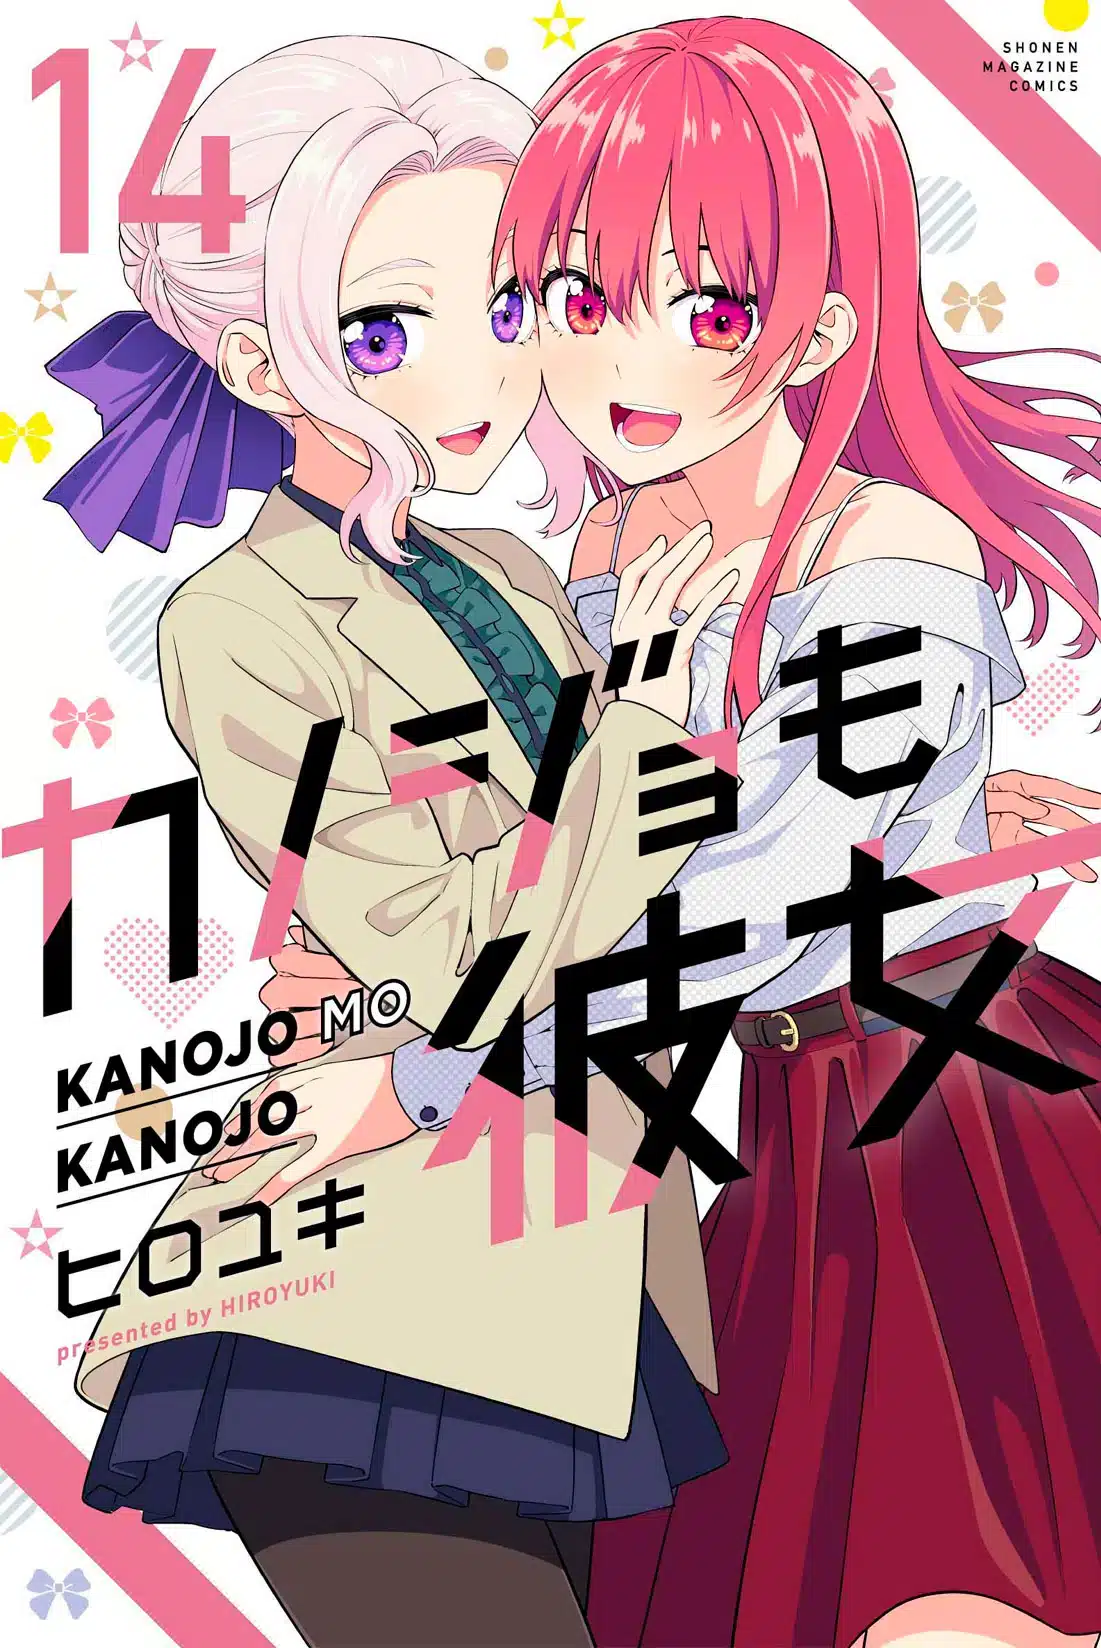 Kanojo mo Kanojo manga vol 14